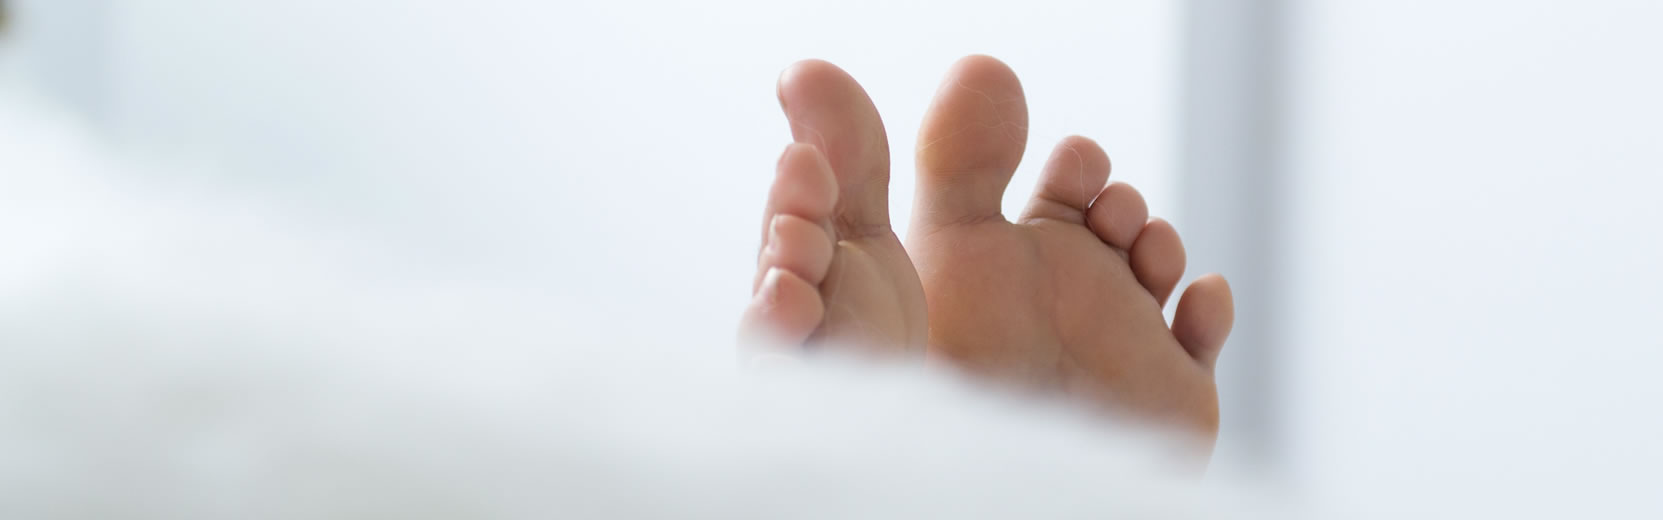 Doenças dos Pés - tratamos as patologias das unhas dos pés: podogeriatria, onicomicose, onicocriptose, ortoniquia